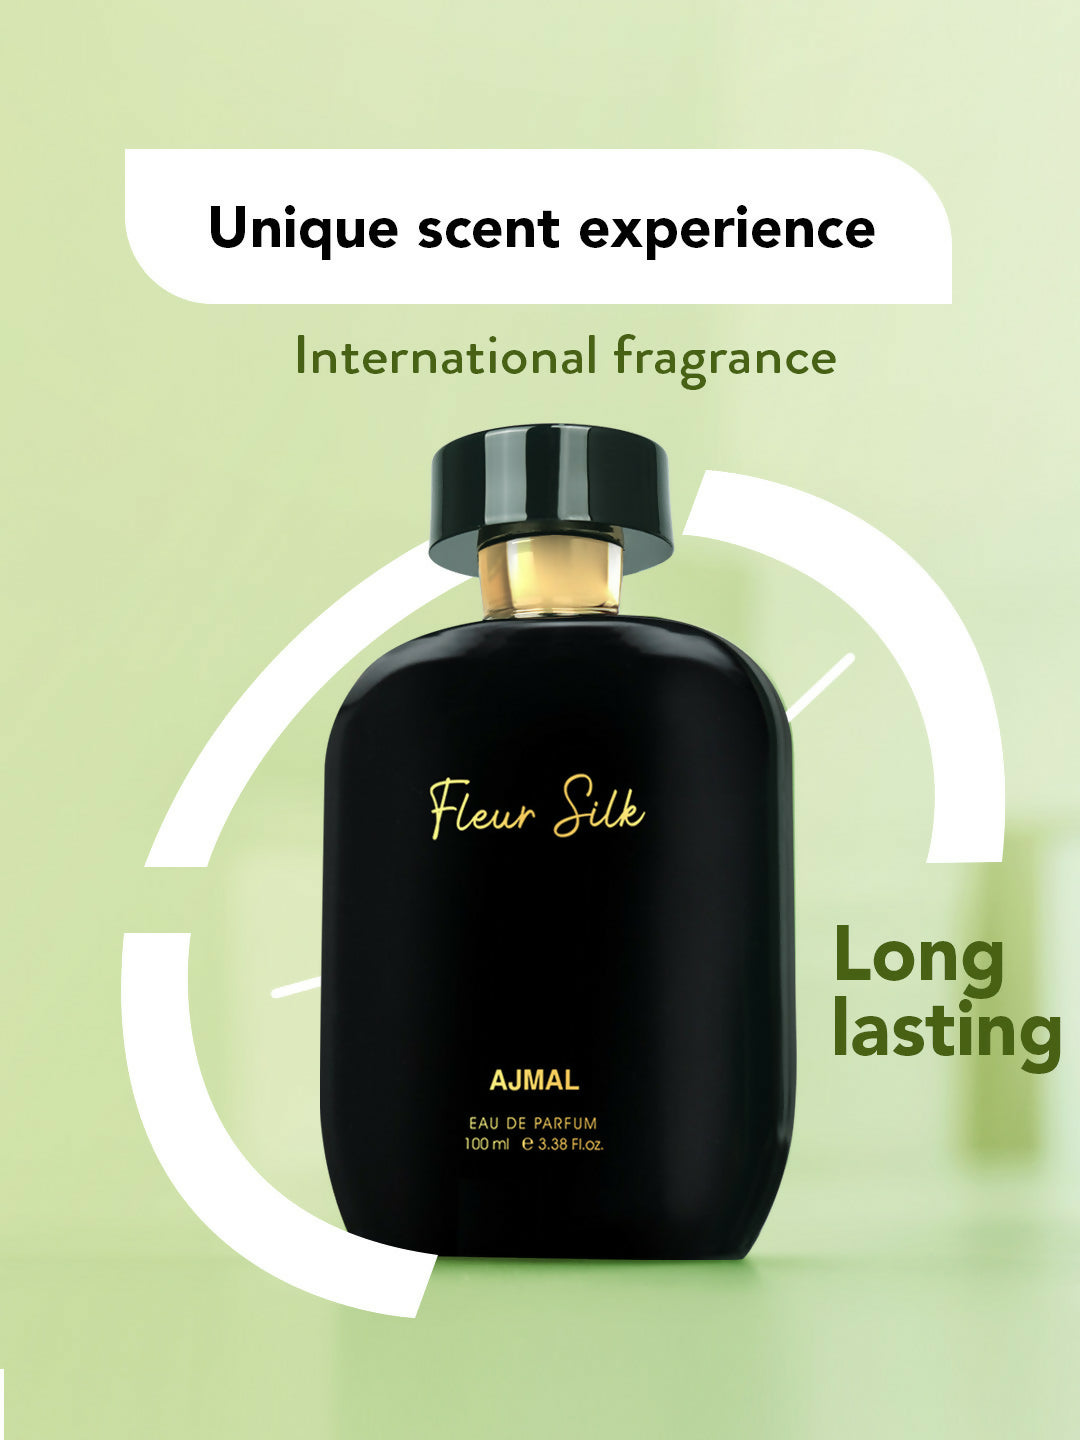 Ajmal ARTISAN - FLEUR SILK Long lasting Fragrance, Handpicked Luxury Perfume for Women 100ml.